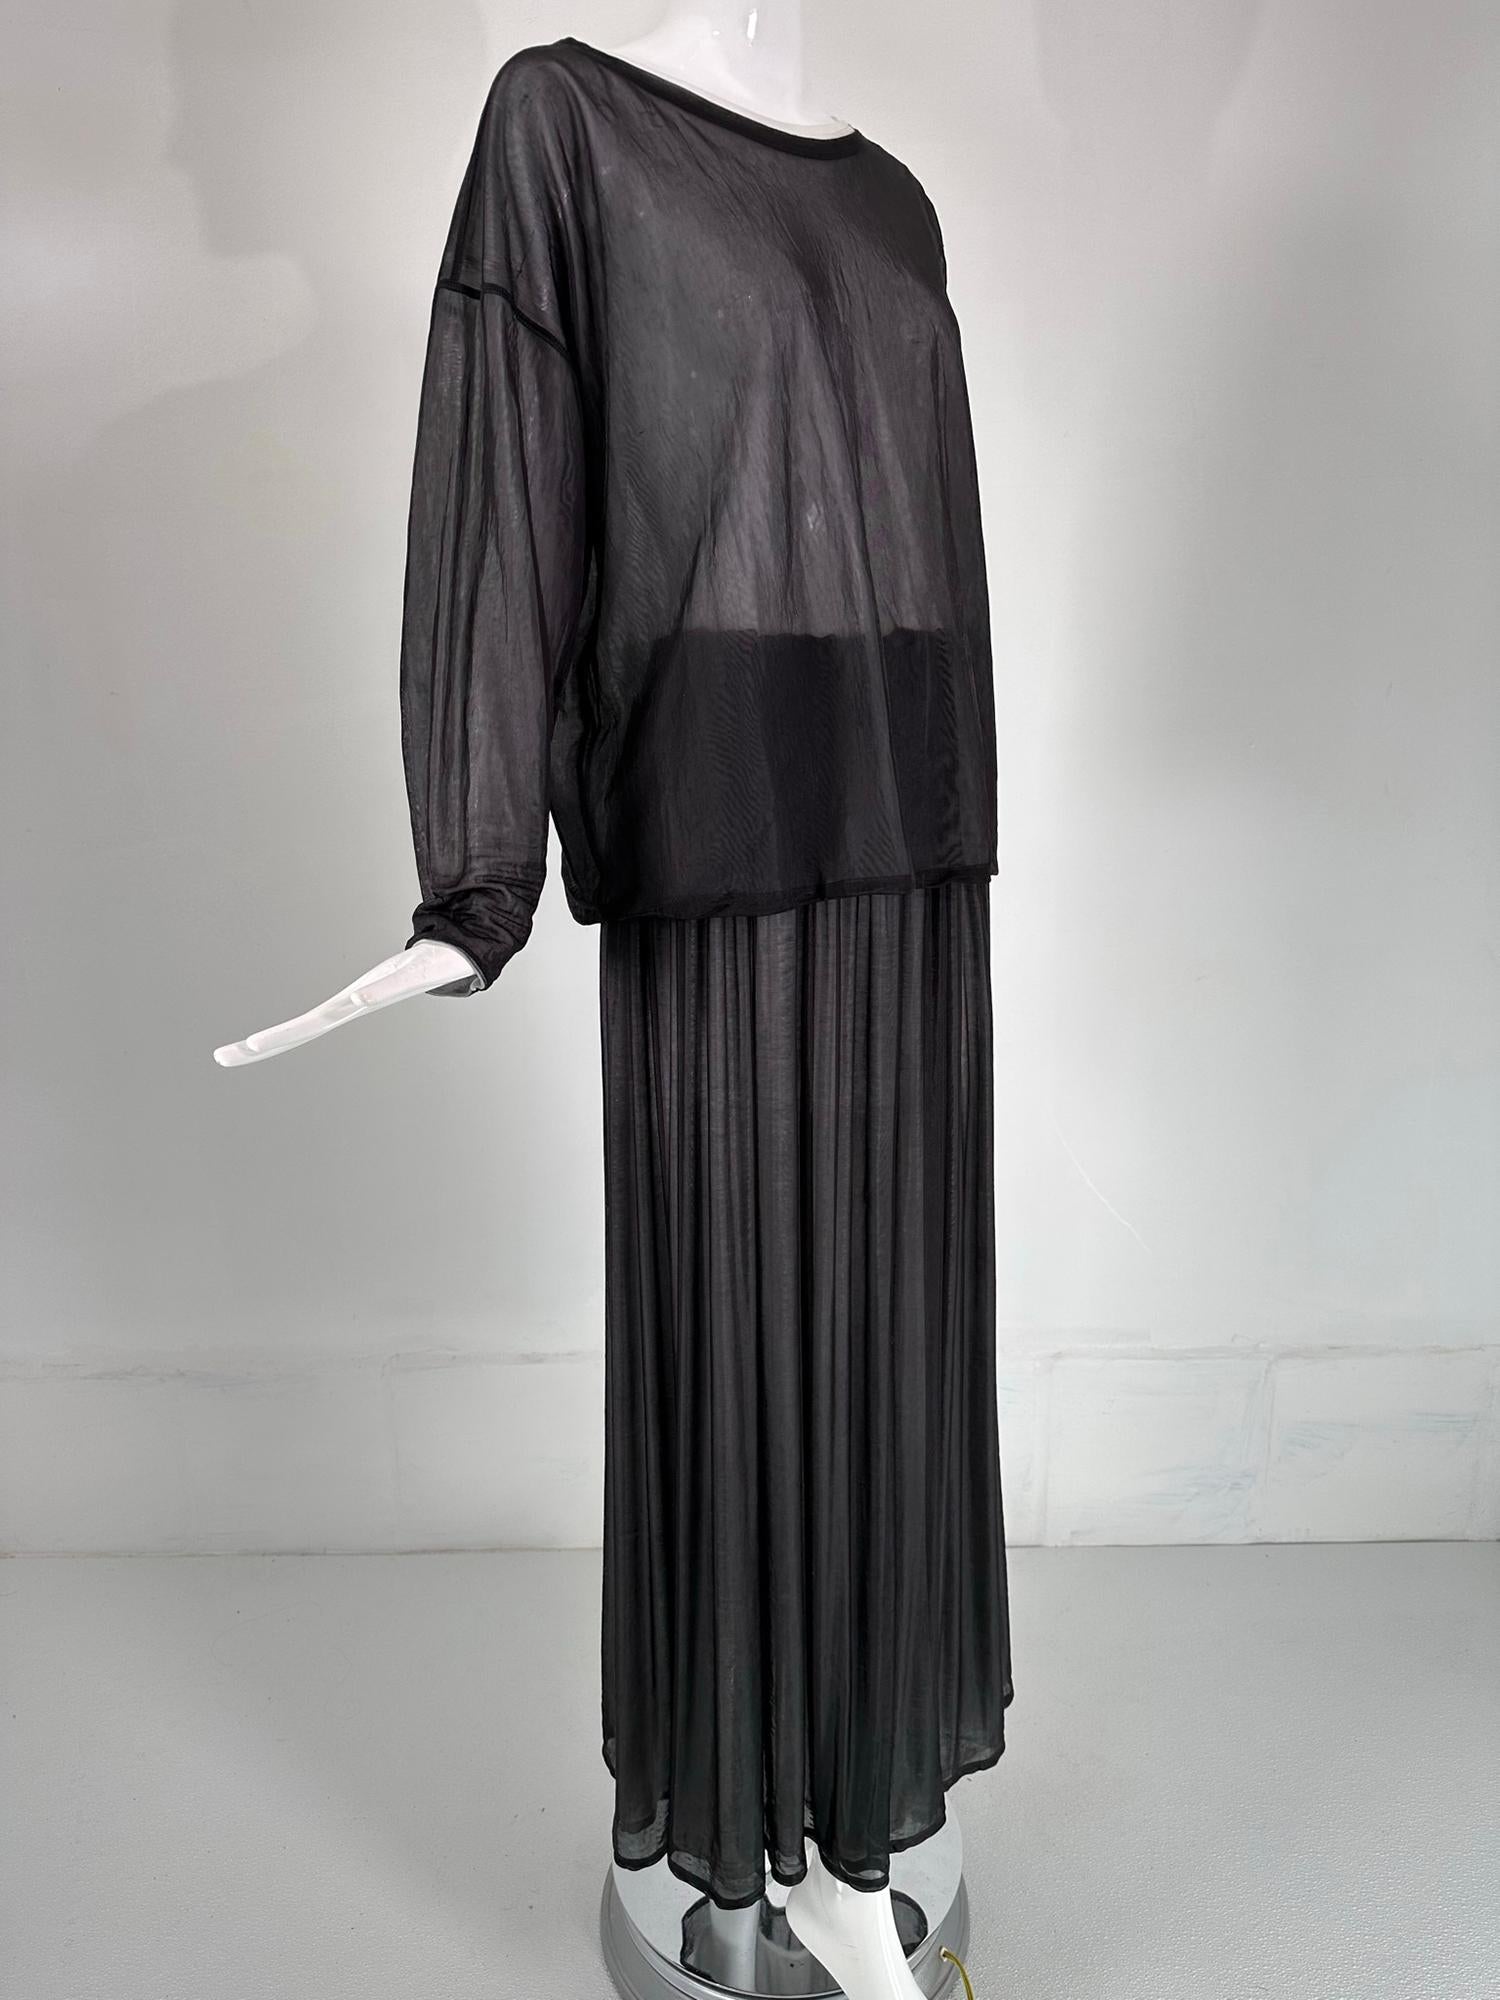 Dolce & Gabbana - Top athlétique oversize en nylon noir et blanc et jupe longue froncée à taille élastique. 
Le haut et la jupe sont transparents, mais pas totalement transparents. Le haut à col rond est doté d'une longue  Manches tombantes et coupe